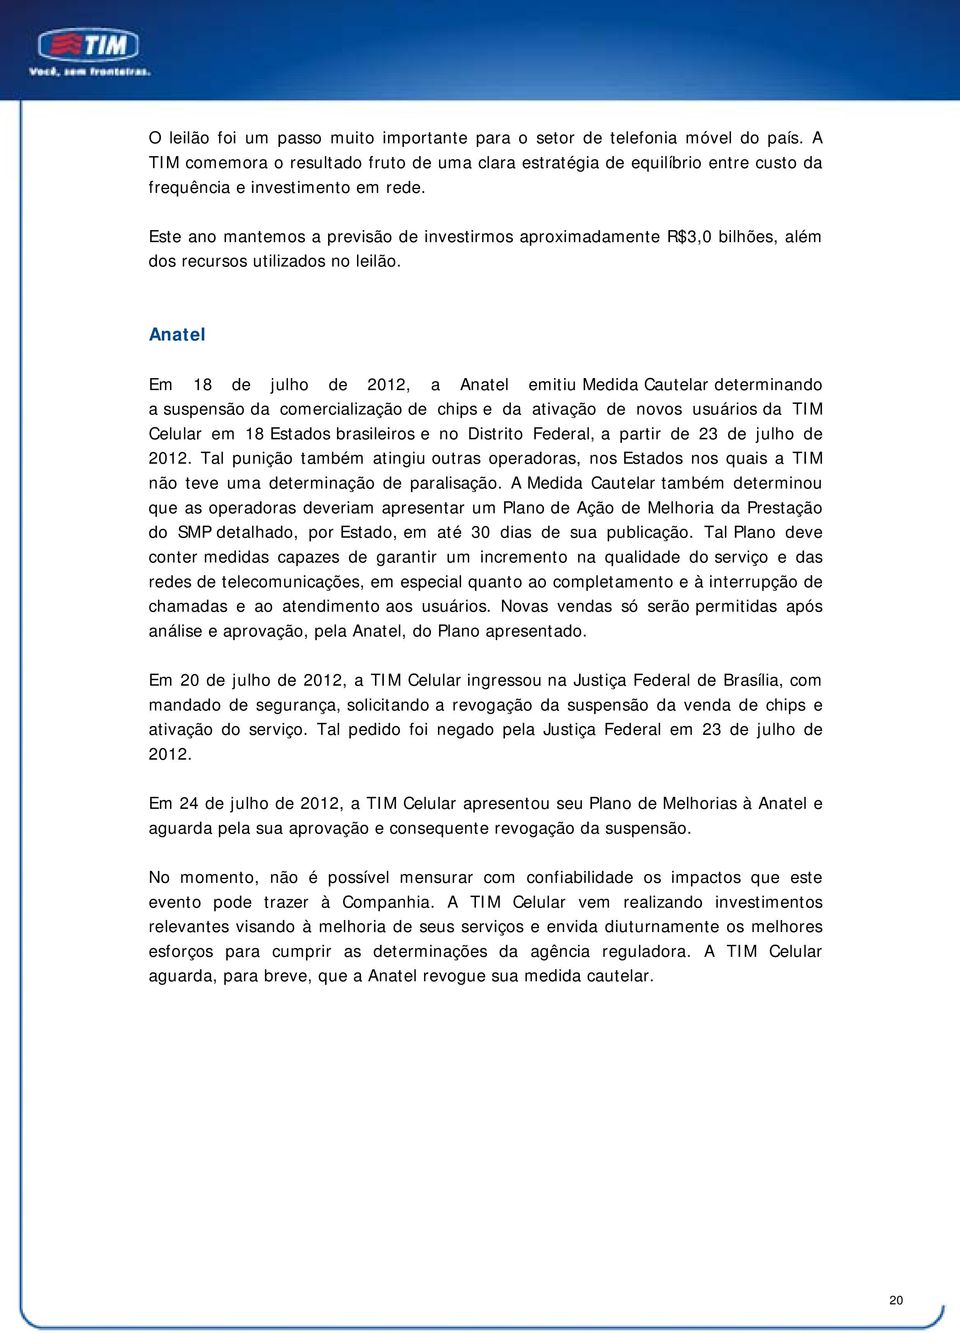 Anatel Em 18 de julho de 2012, a Anatel emitiu Medida Cautelar determinando a suspensão da comercialização de chips e da ativação de novos usuários da TIM Celular em 18 Estados brasileiros e no